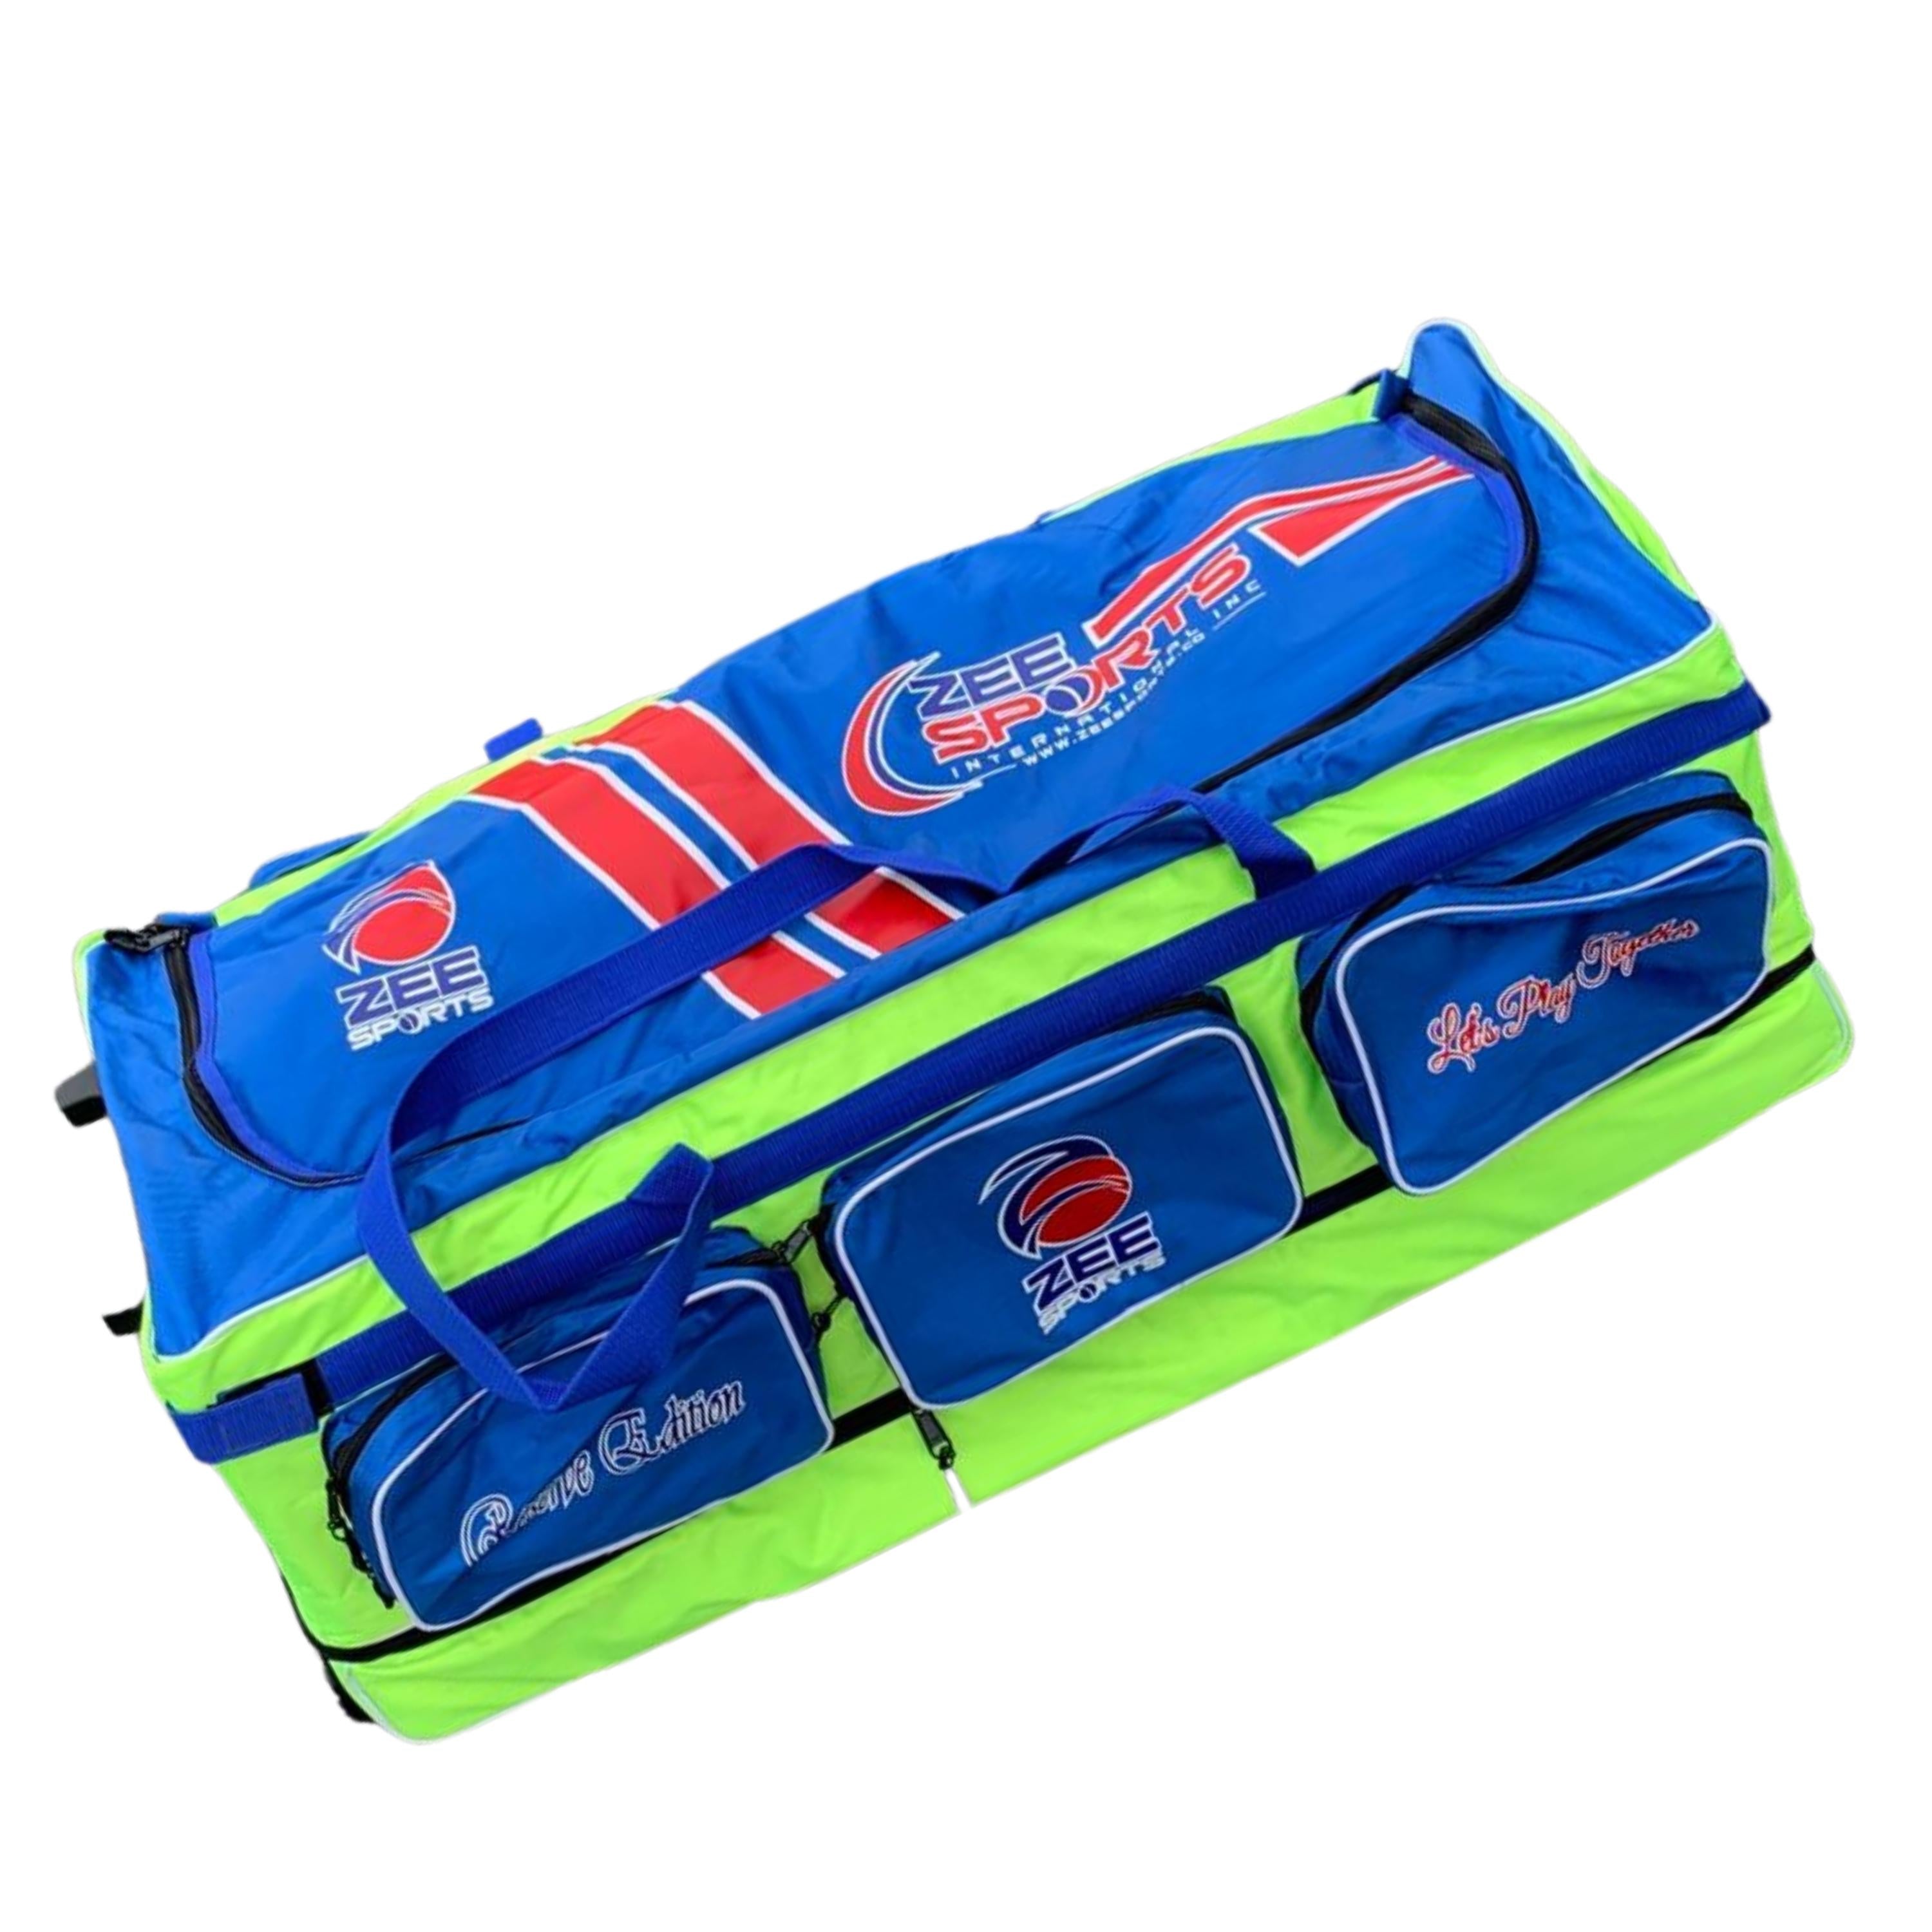 Zee Sports Kit Bag Double Decker